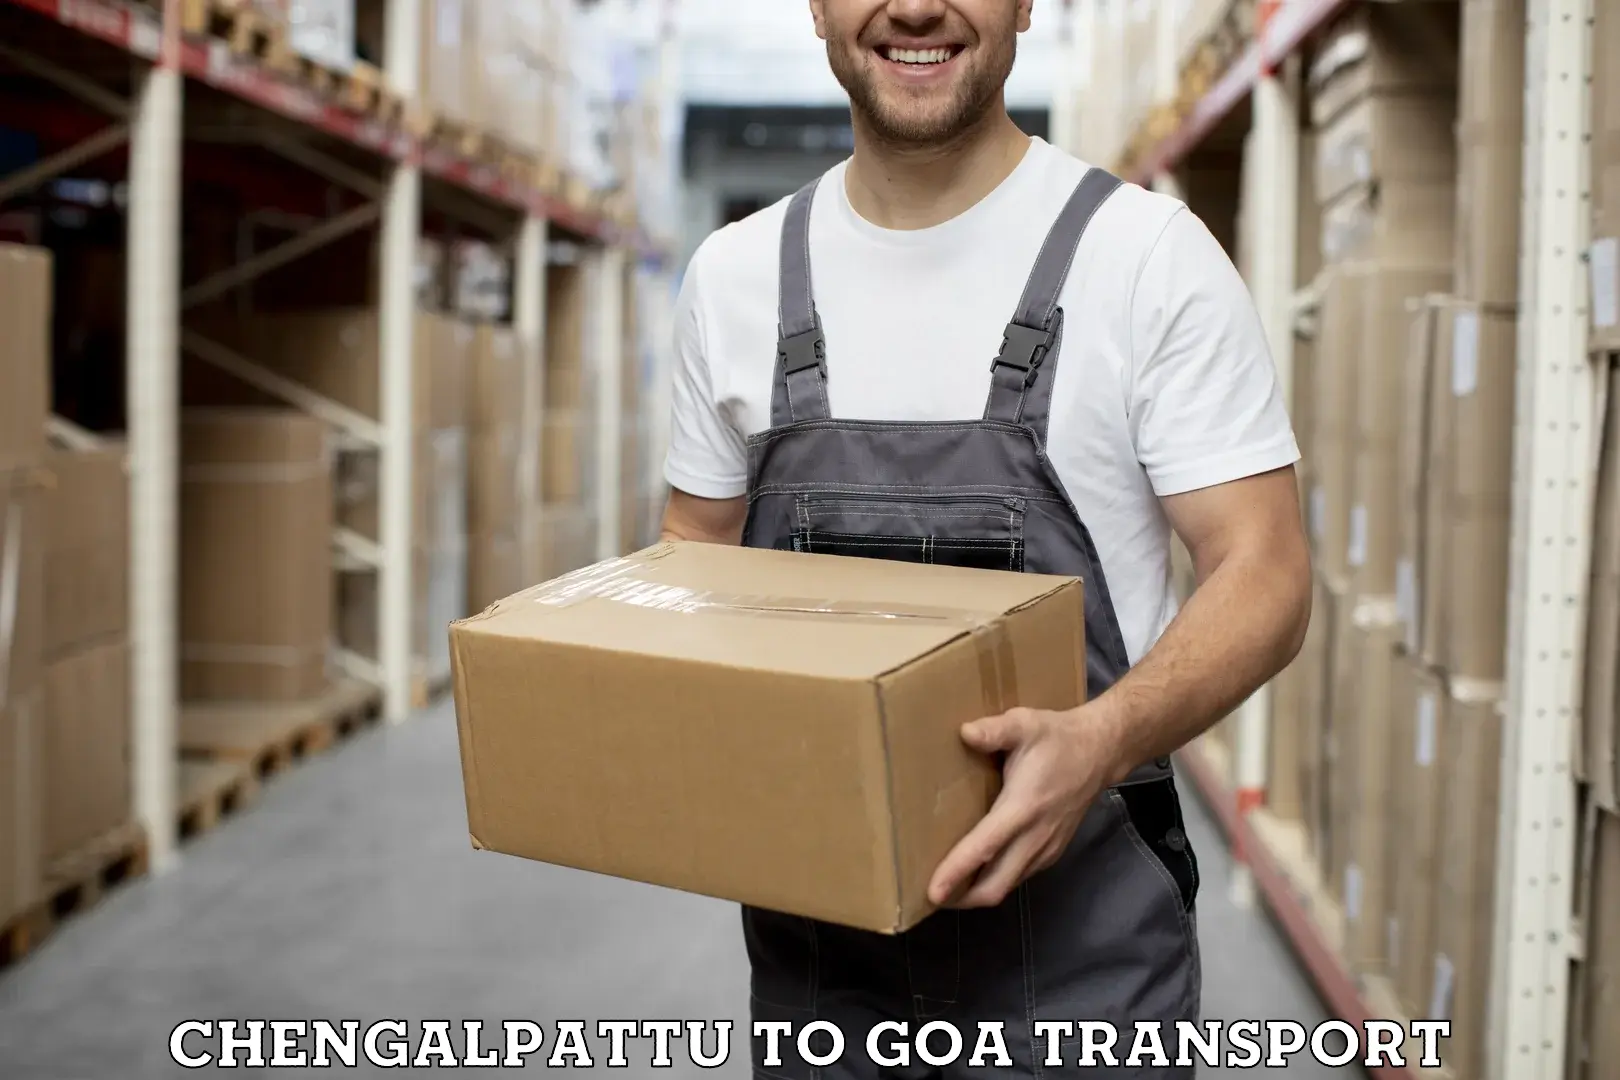 Vehicle transport services Chengalpattu to Vasco da Gama